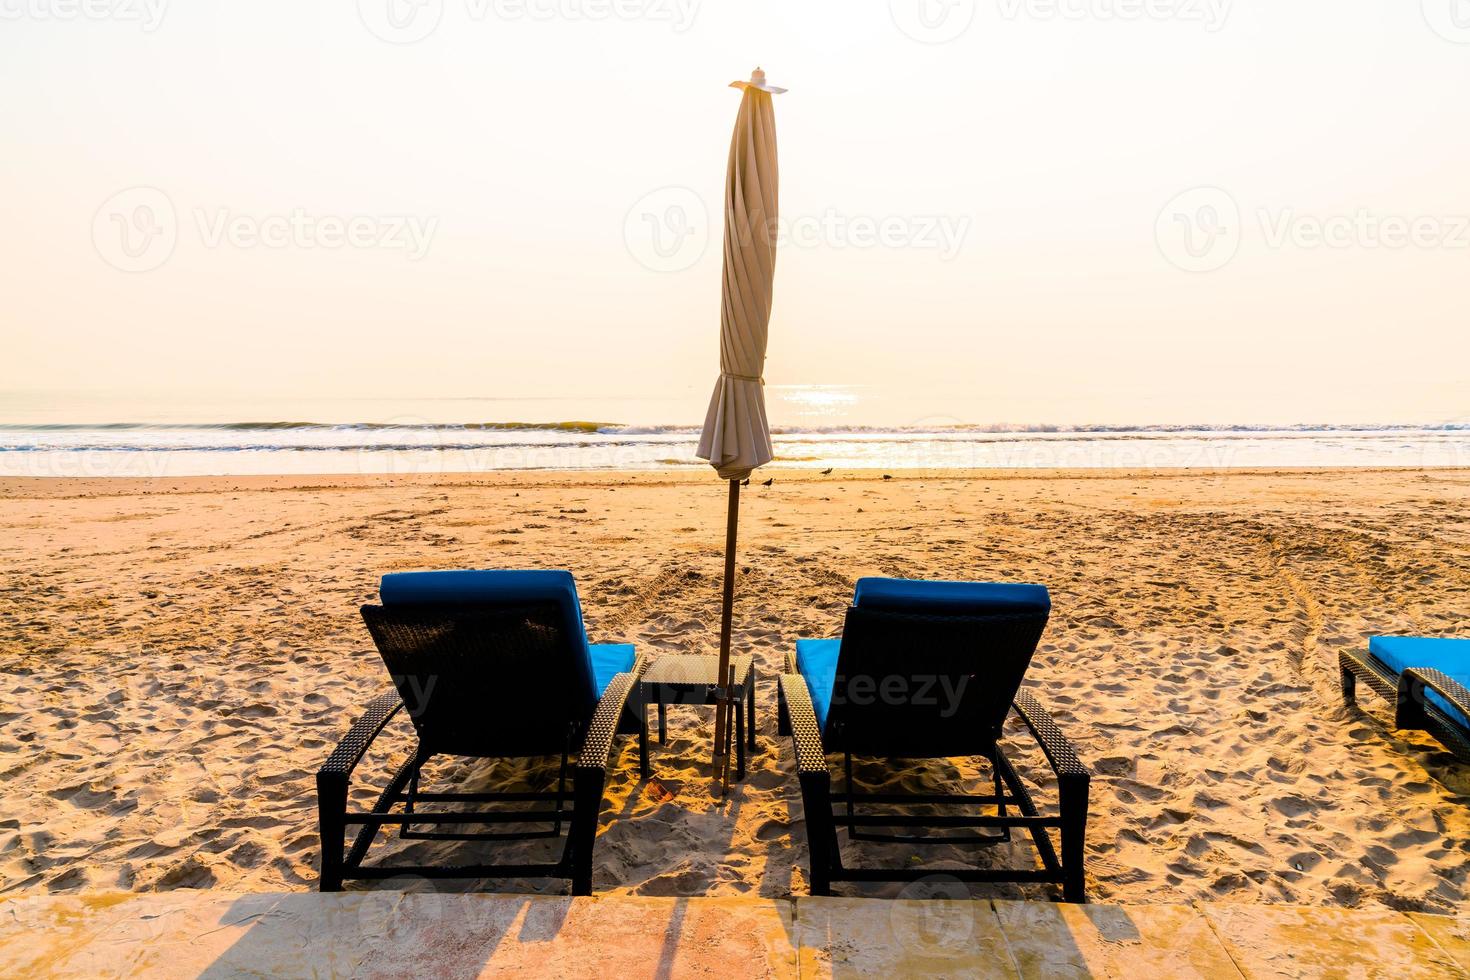 paraplystrandstol med palmträd och havsstrand vid soluppgångstid - semester- och semesterkoncept foto